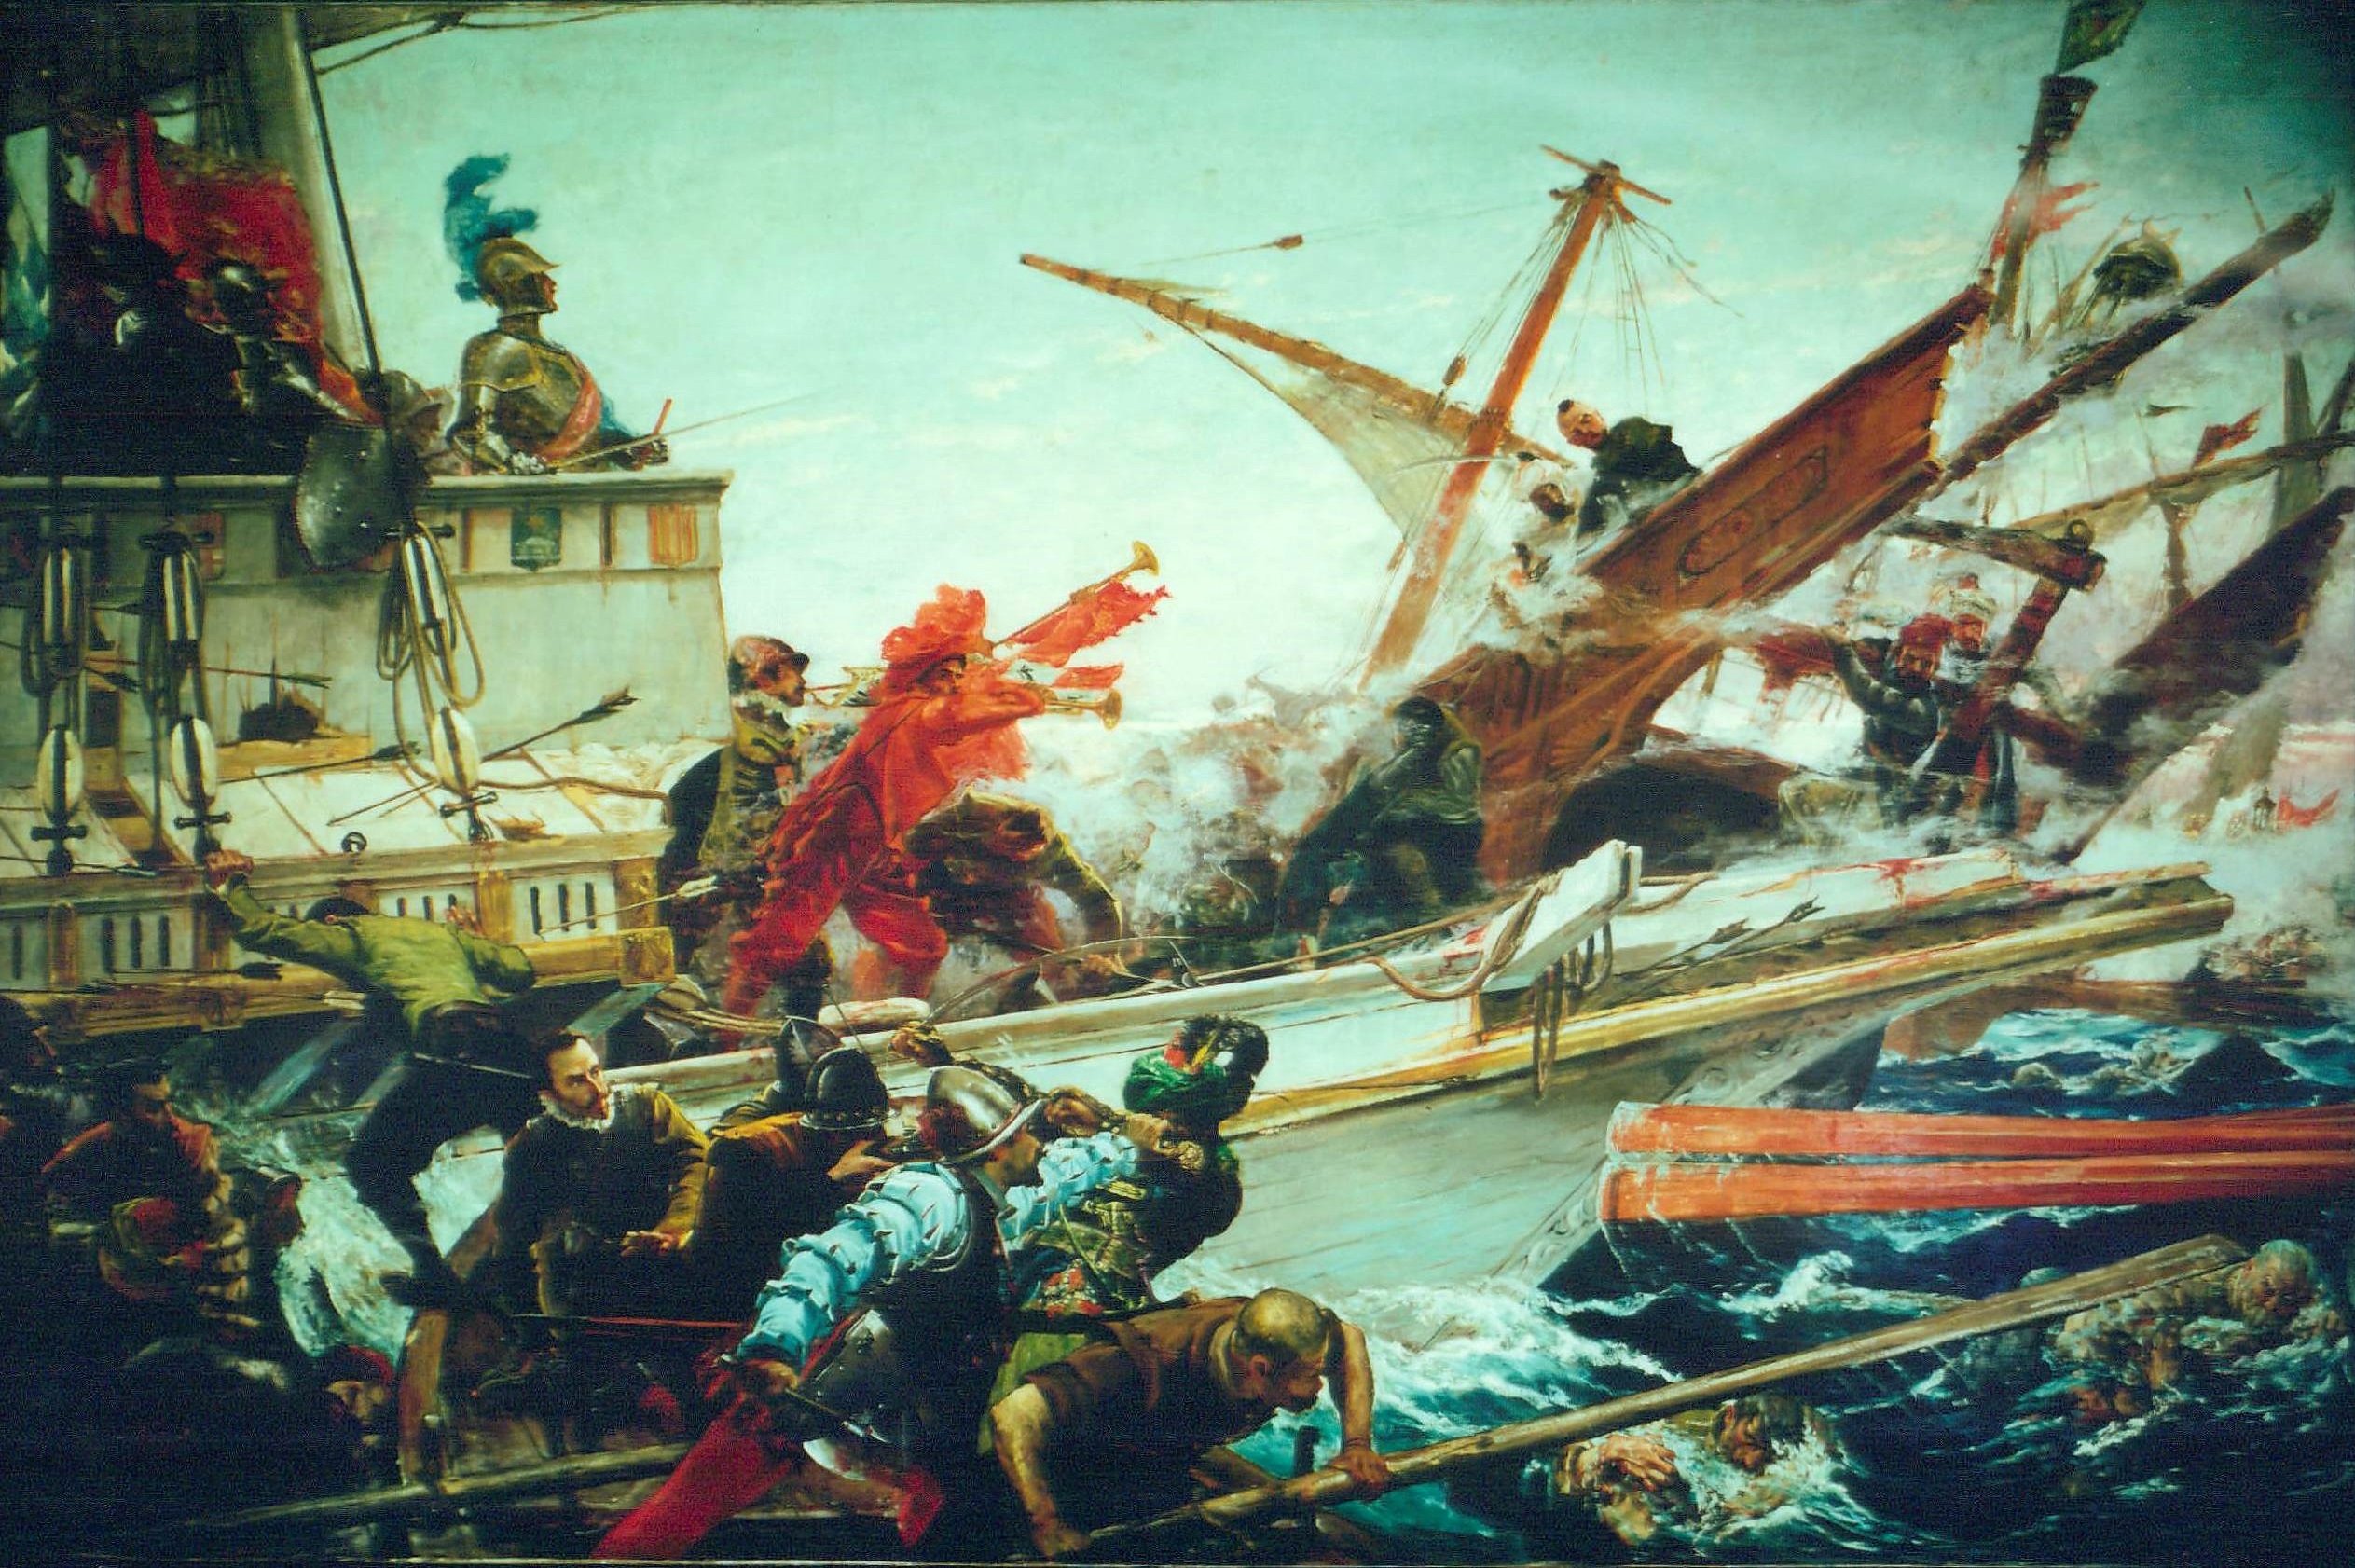 inebahtı deniz muharebesi